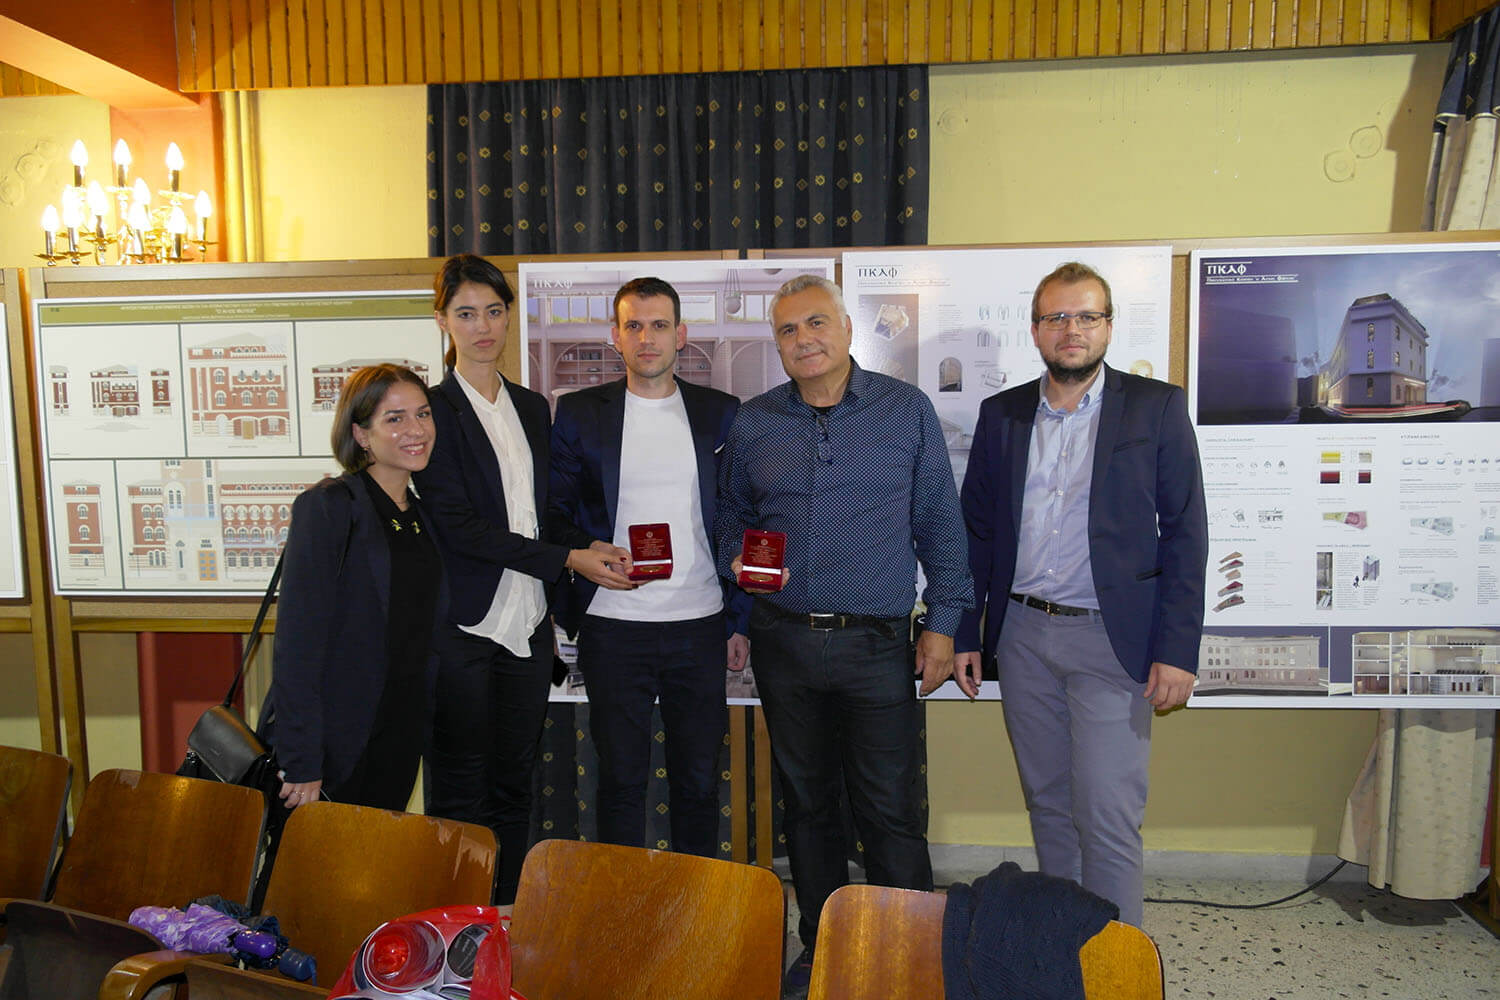 Α' βραβείο του Χρήστου Αυγερινού στον πανελληνίο αρχιτεκτονικό διαγωνισμό για αποκατάσταση πνευματικού κέντρου στην Κατερίνη.